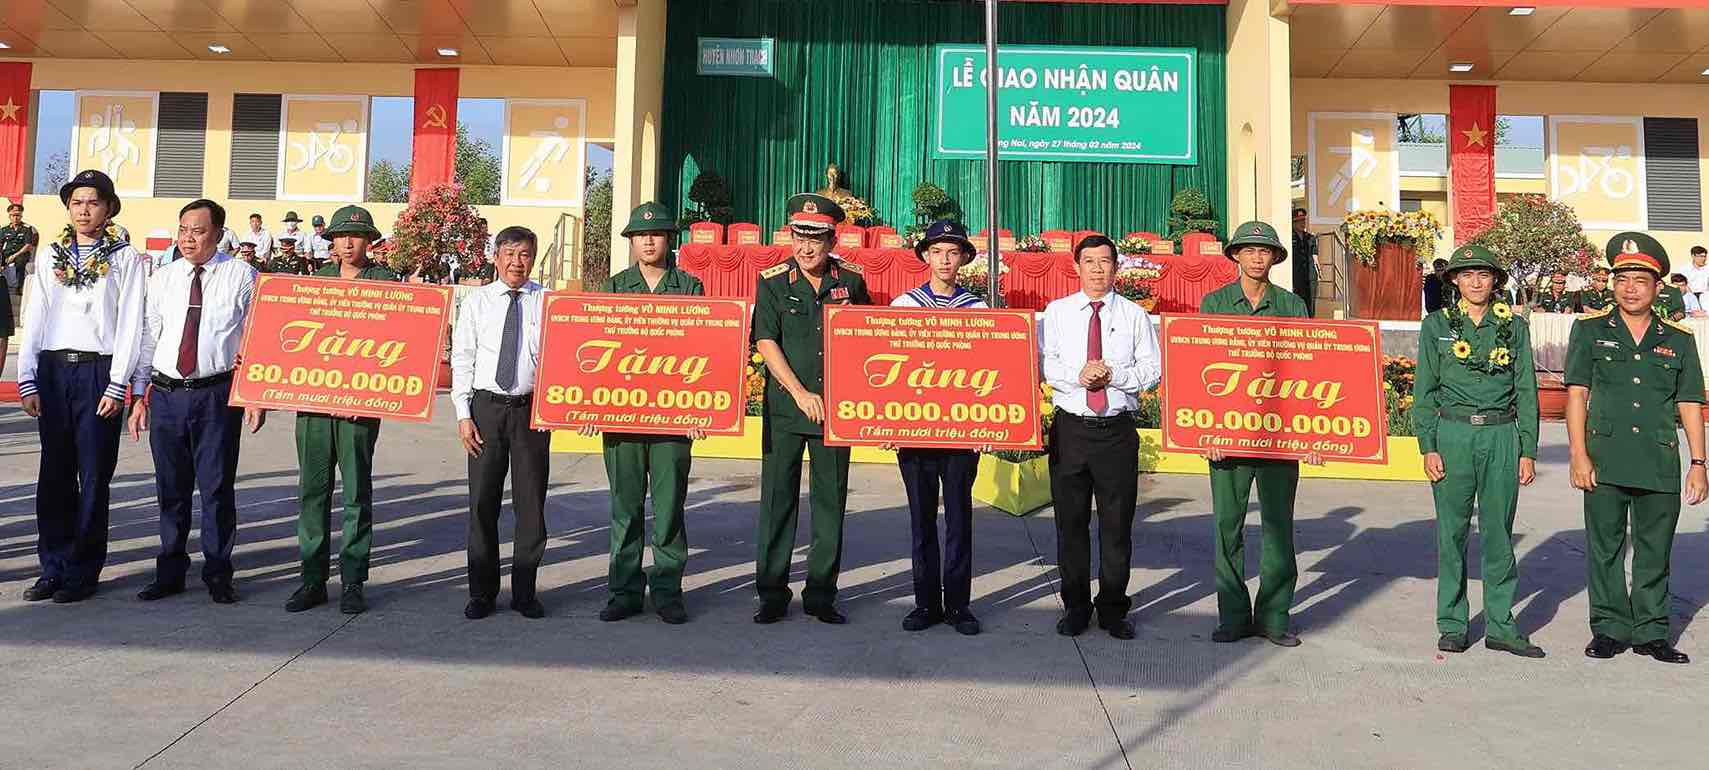  Thượng tướng Võ Minh Lương và các đại biểu trao bảng tượng trưng 4 căn nhà Tình nghĩa quân dân cho các trường hợp của huyện Nhơn Trạch. Ảnh: Xuân Mai 